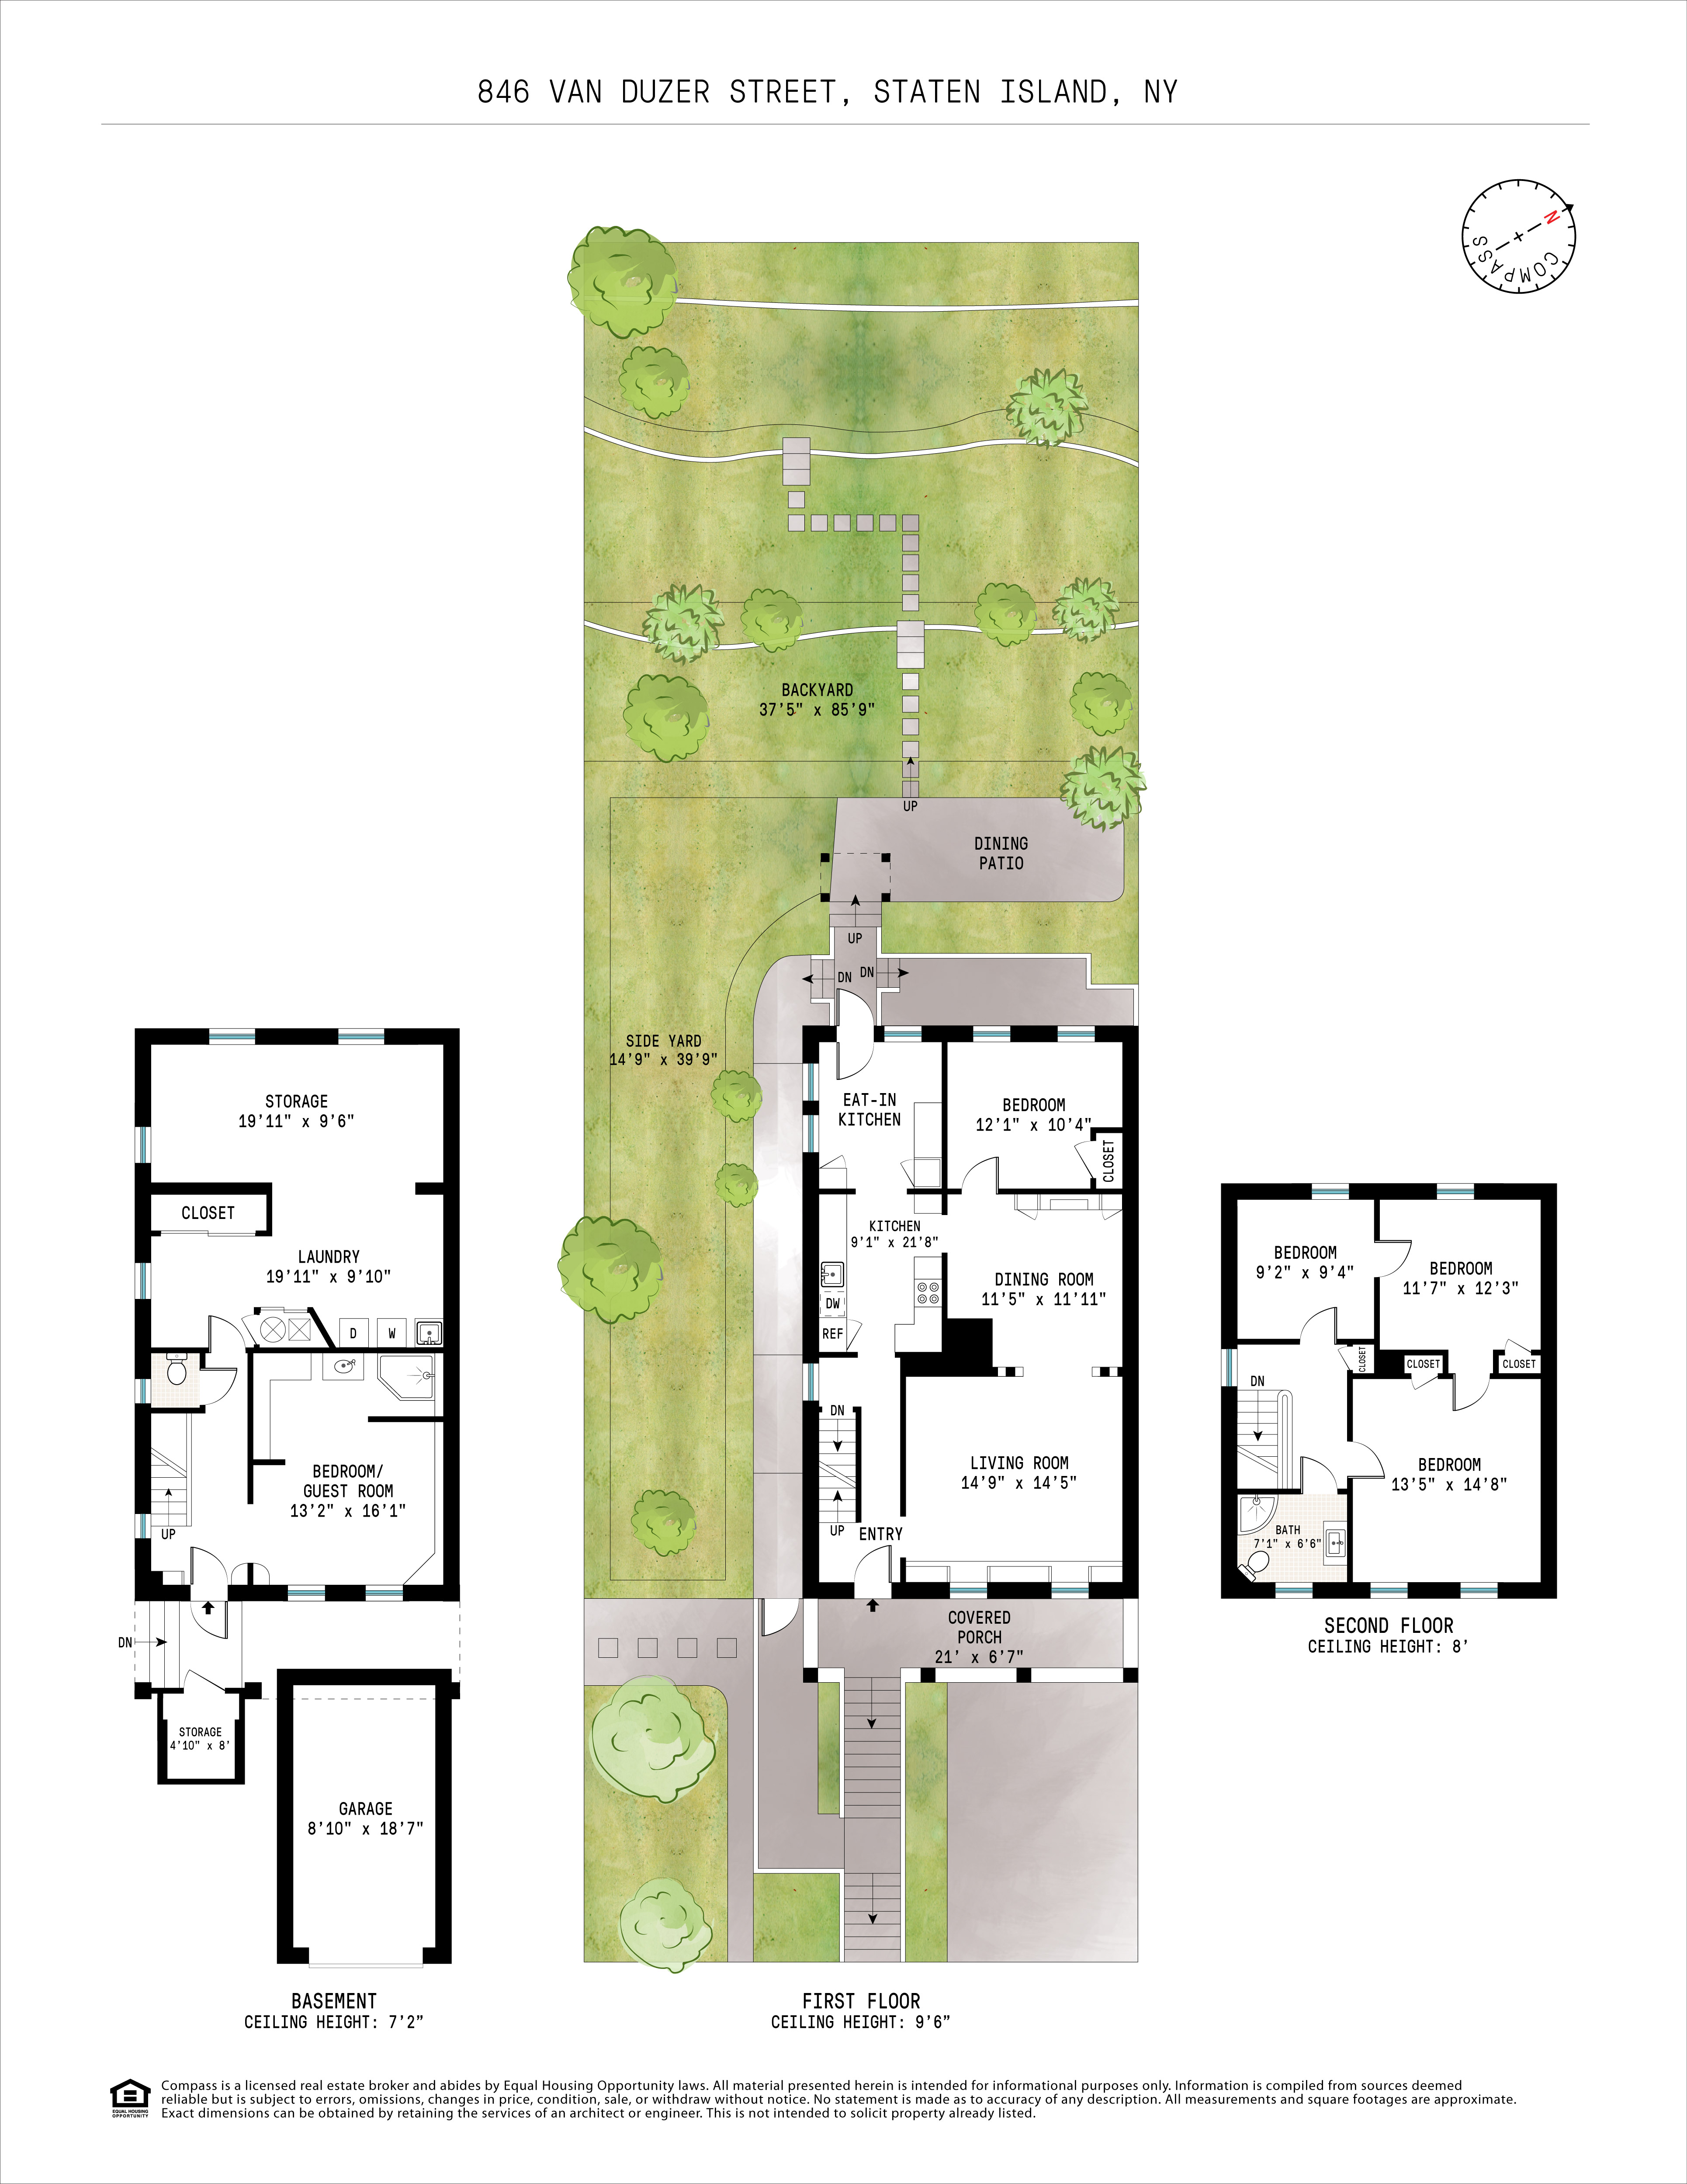 Floorplan for 846 Van Duzer Street